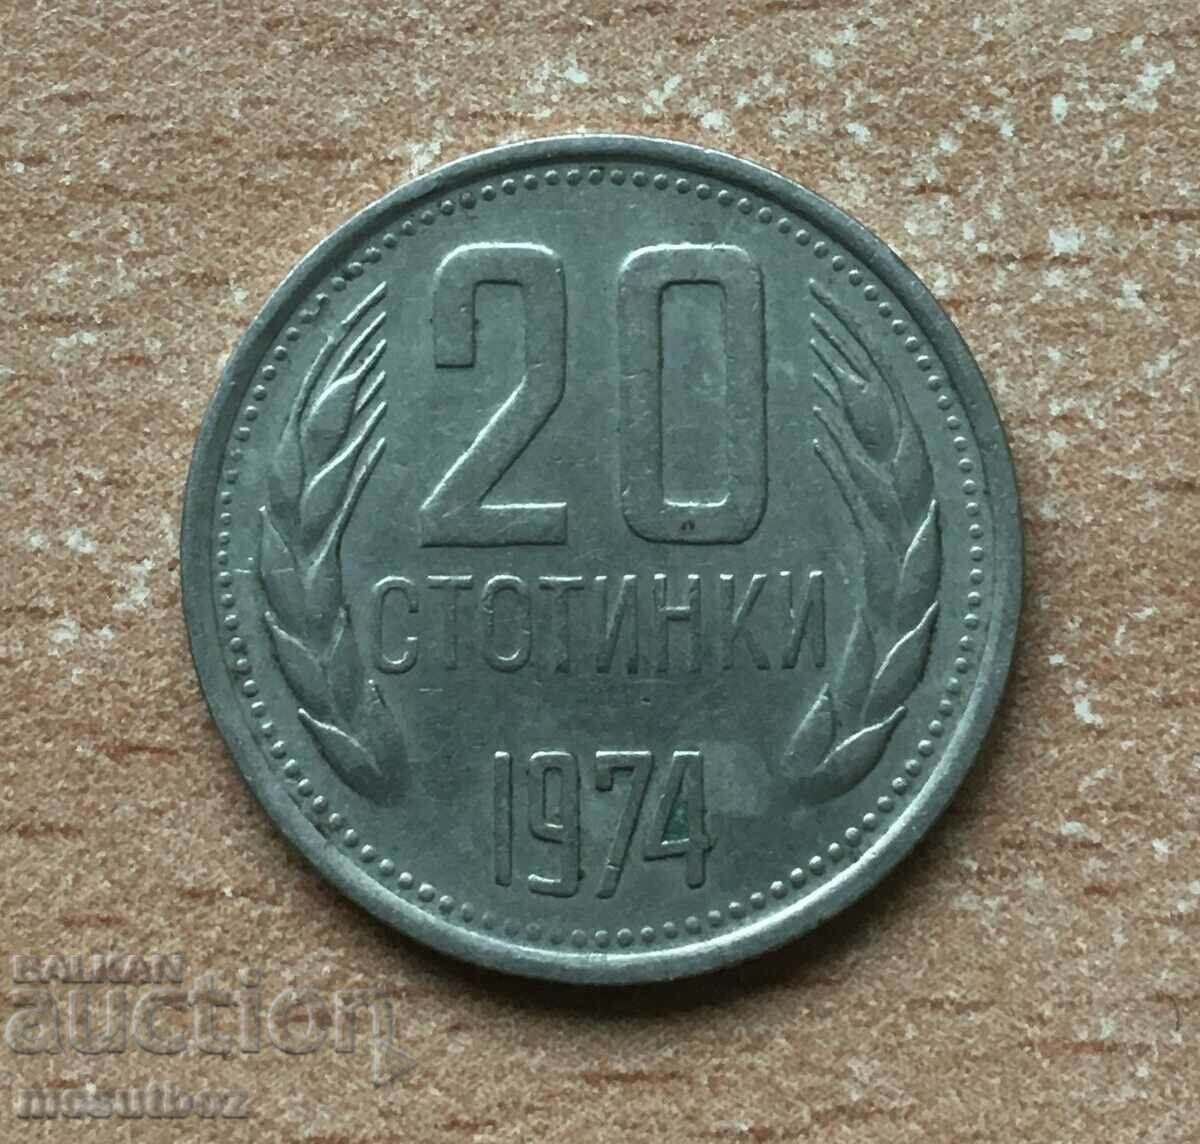 Rare 1974 20 cent coin.